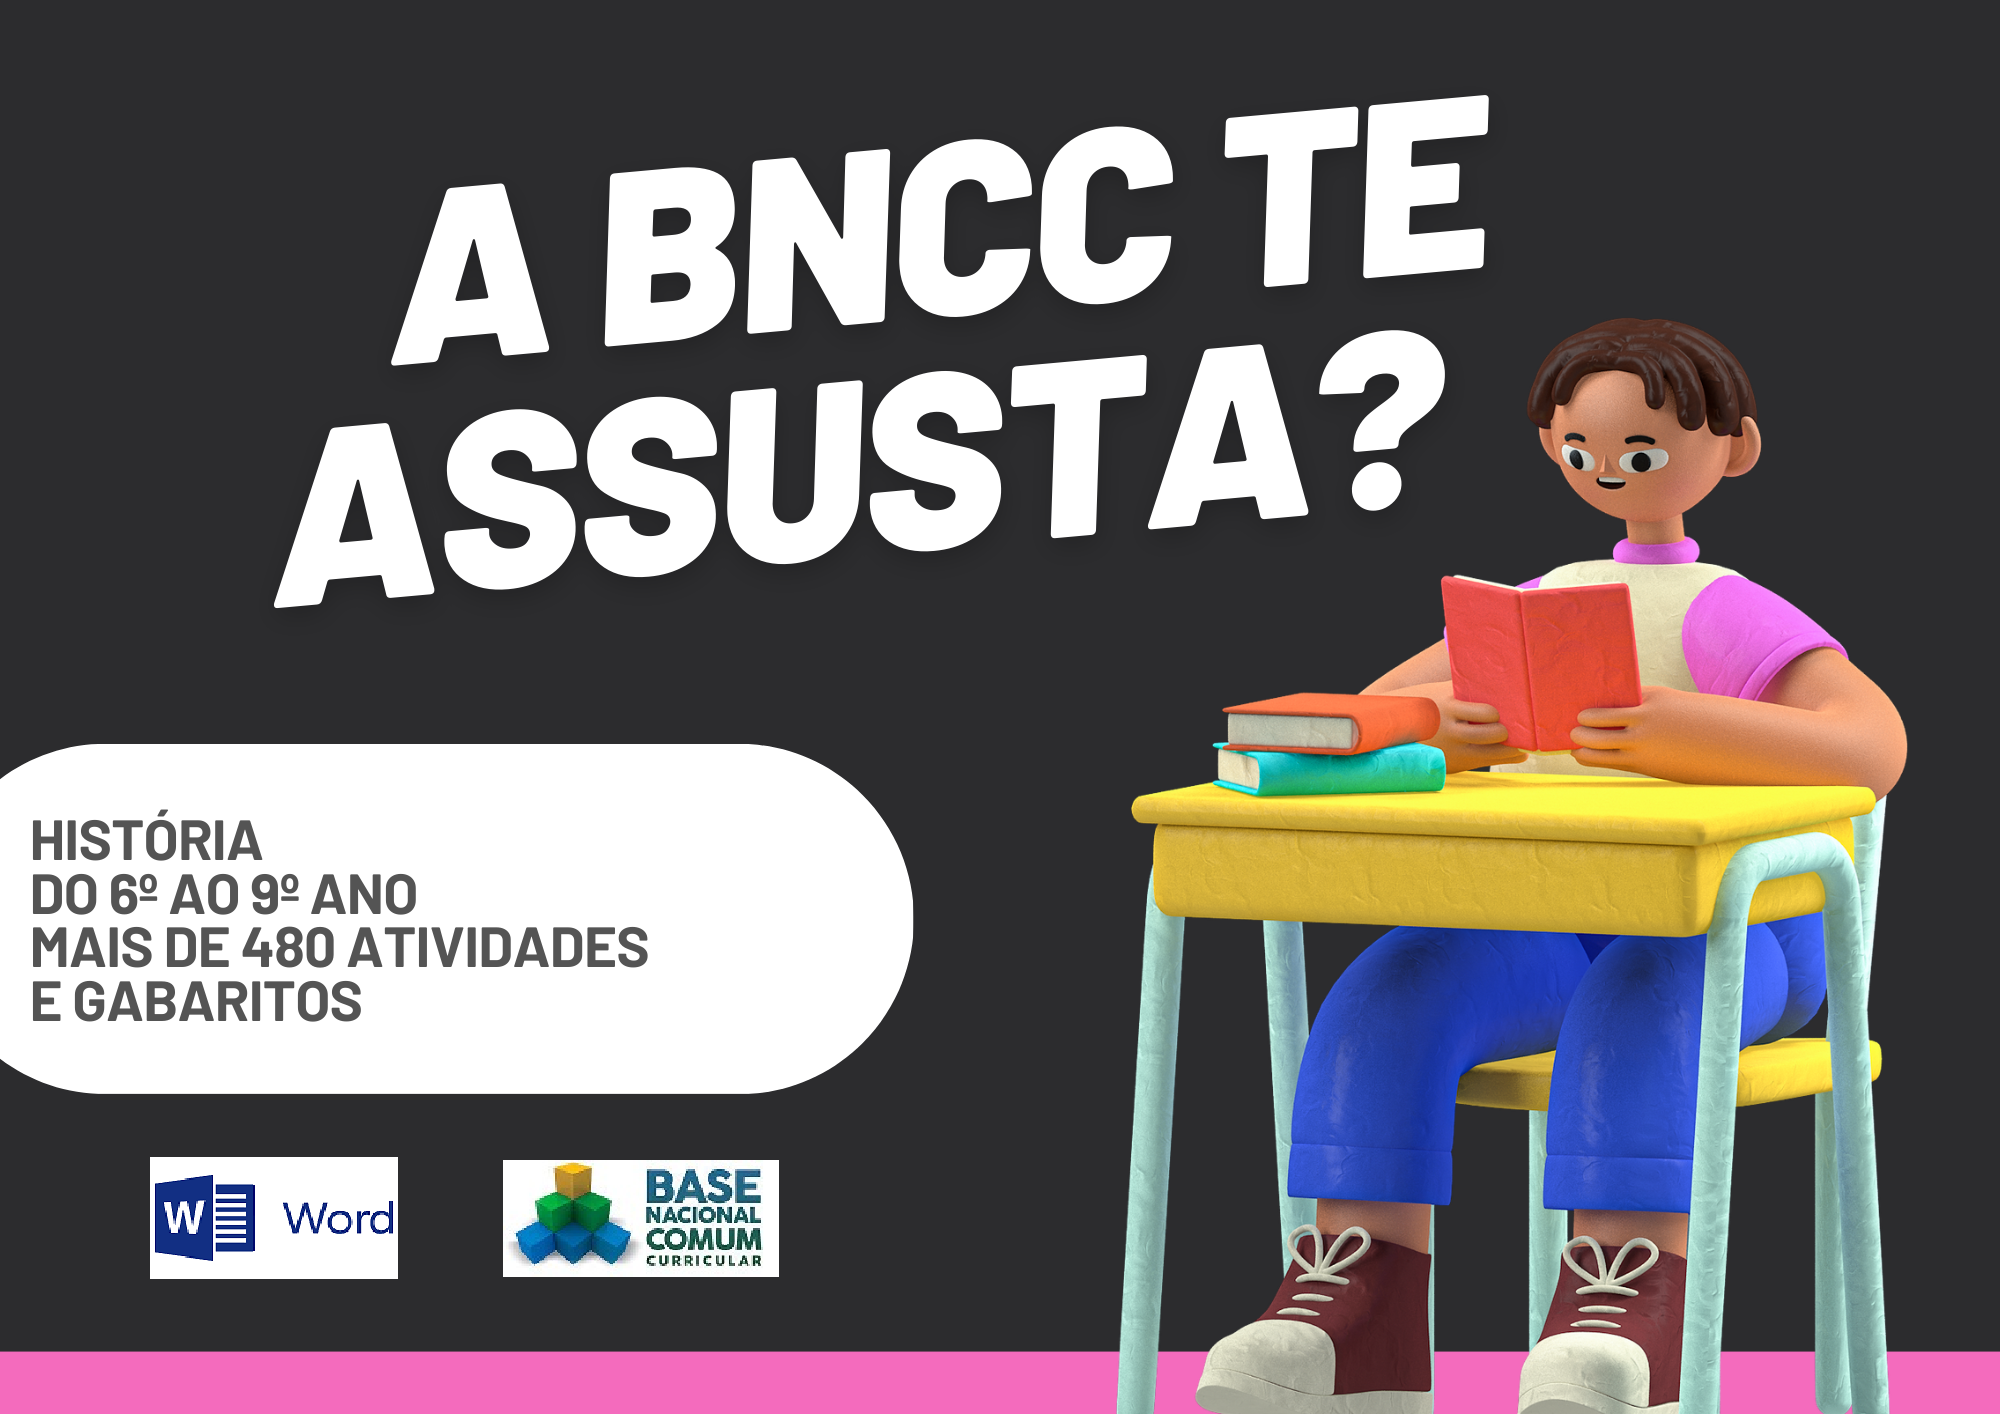 A BNCC te assusta história do 6º ao 9º ano mais de 480 atividades e gabaritos com um aluno segurando um livro e os símbolos do Word e da BNCC